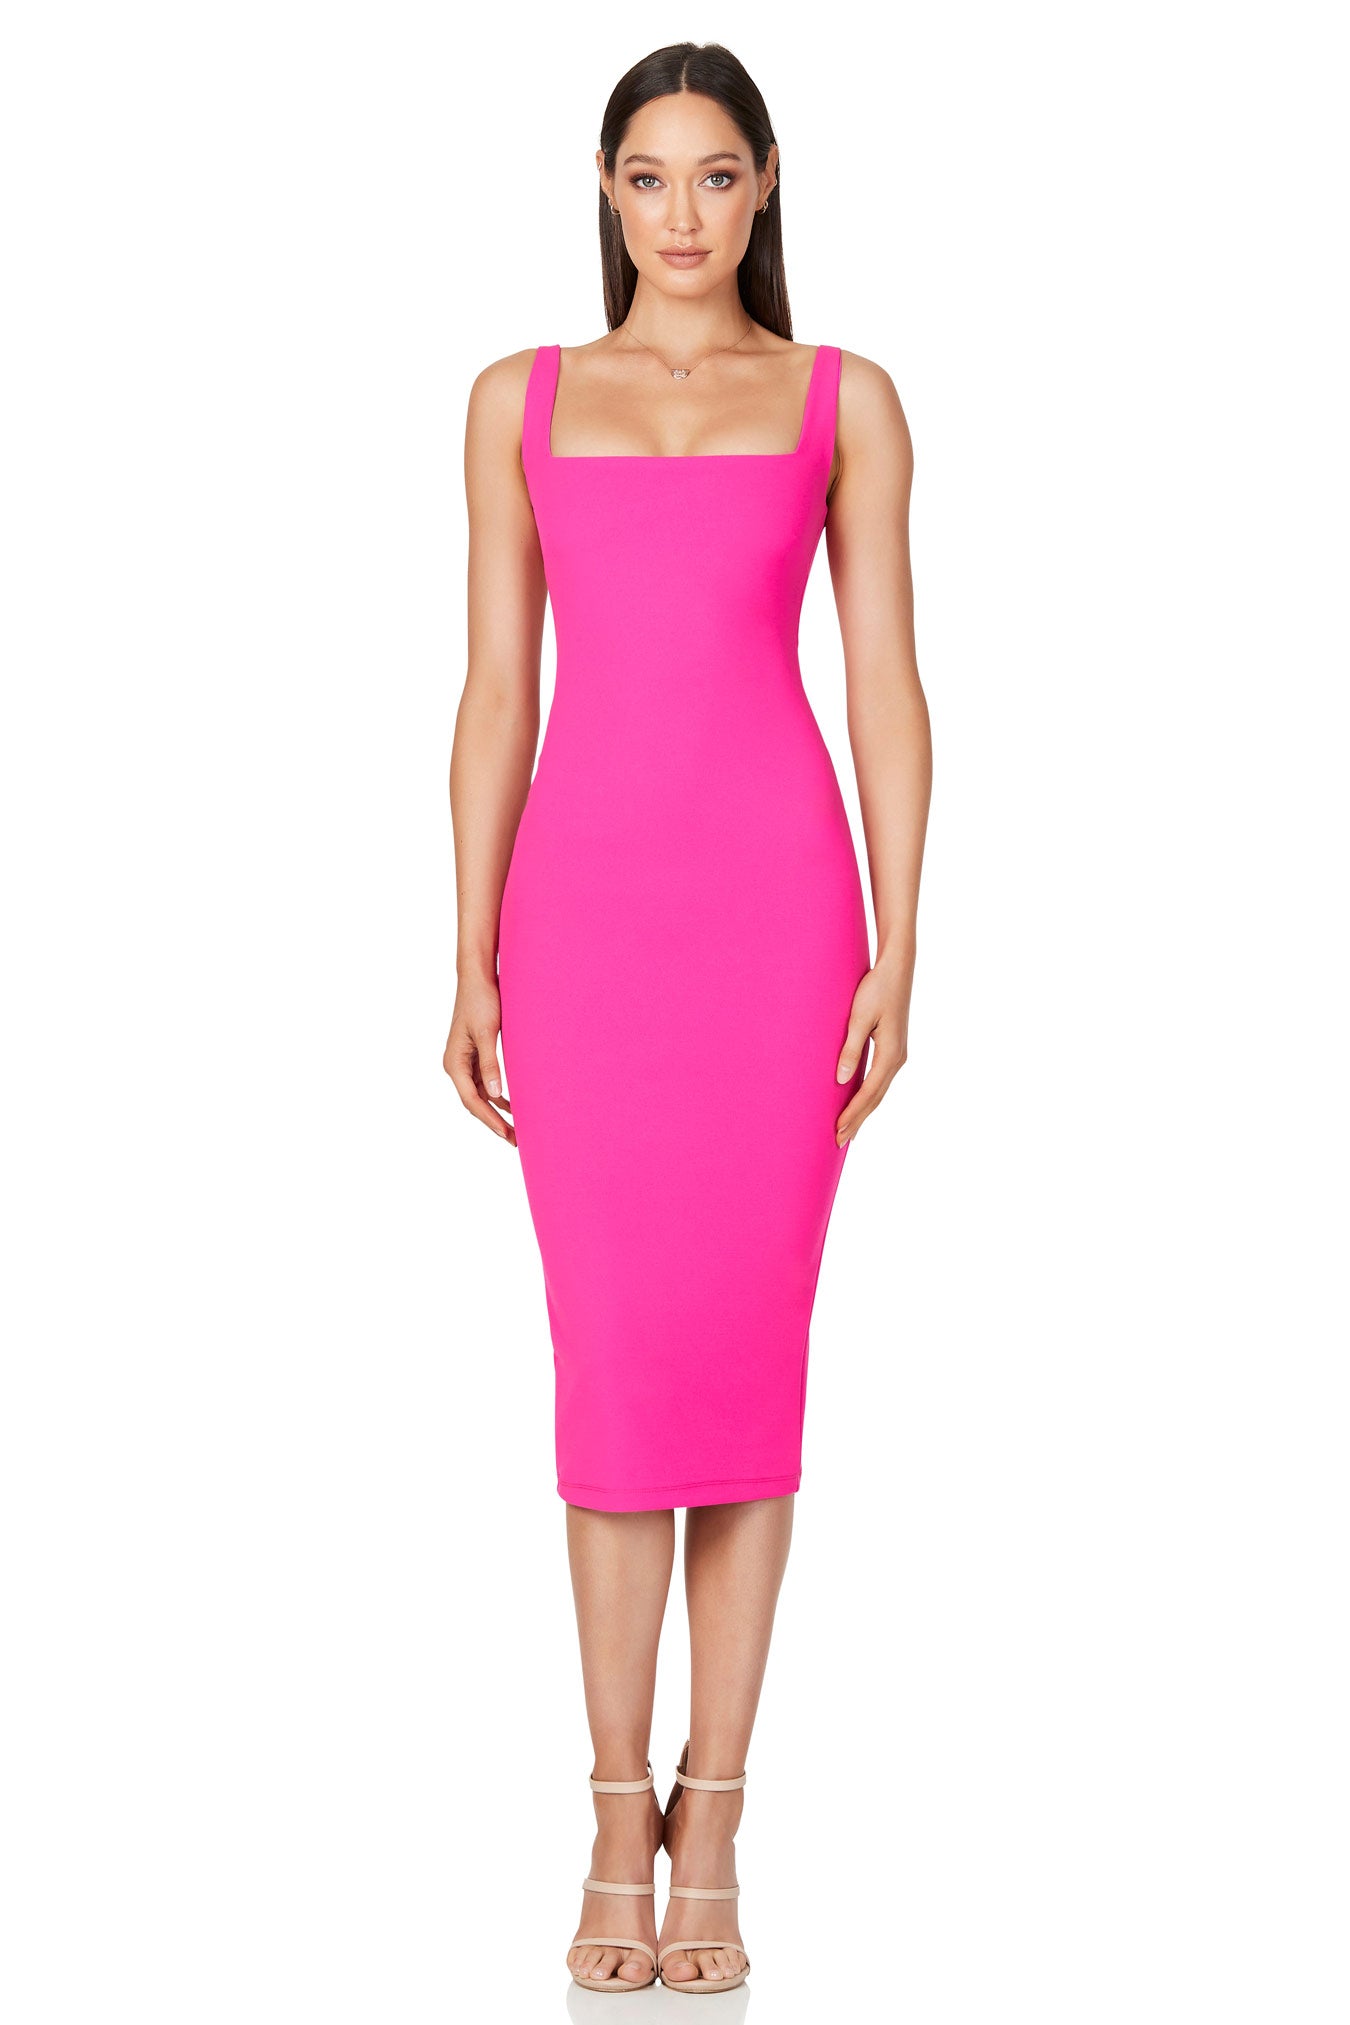 Nookie Rendevous Midi in Pink | Nookie Midi Dresses